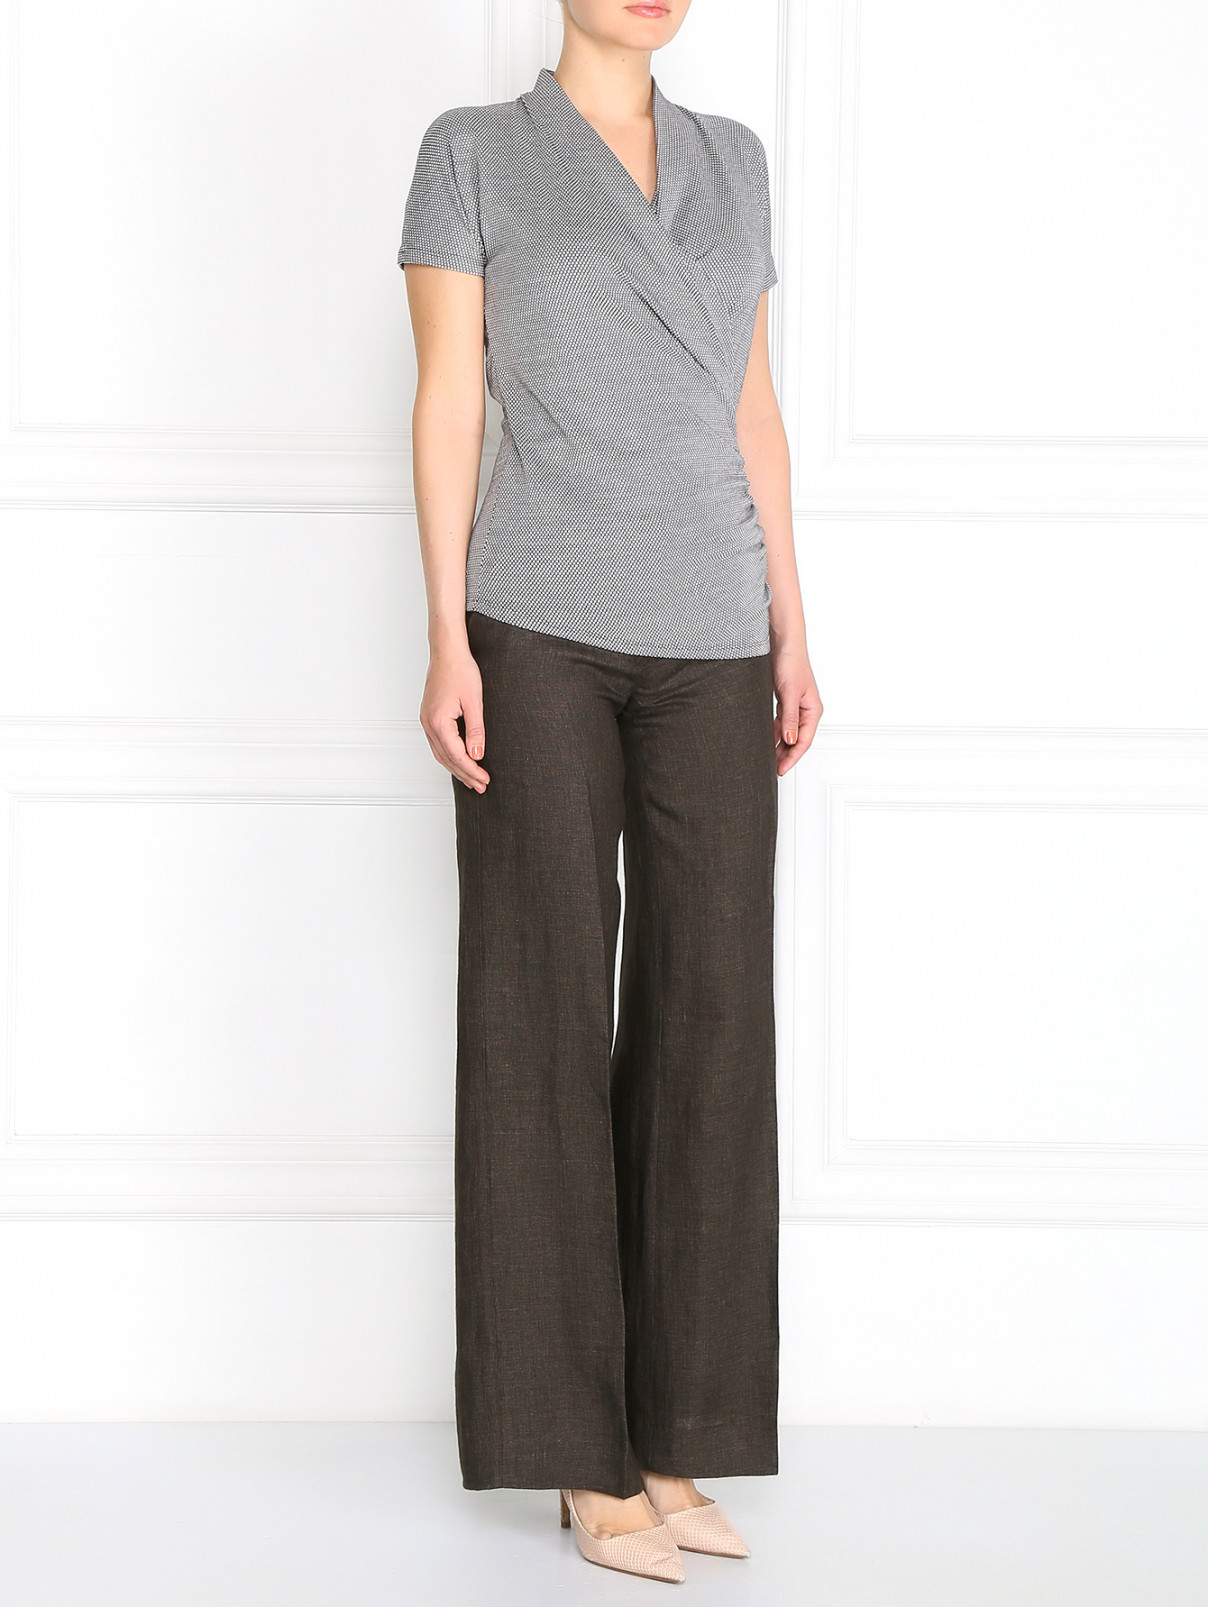 Прямые брюки из льна Weekend Max Mara  –  Модель Общий вид  – Цвет:  Серый